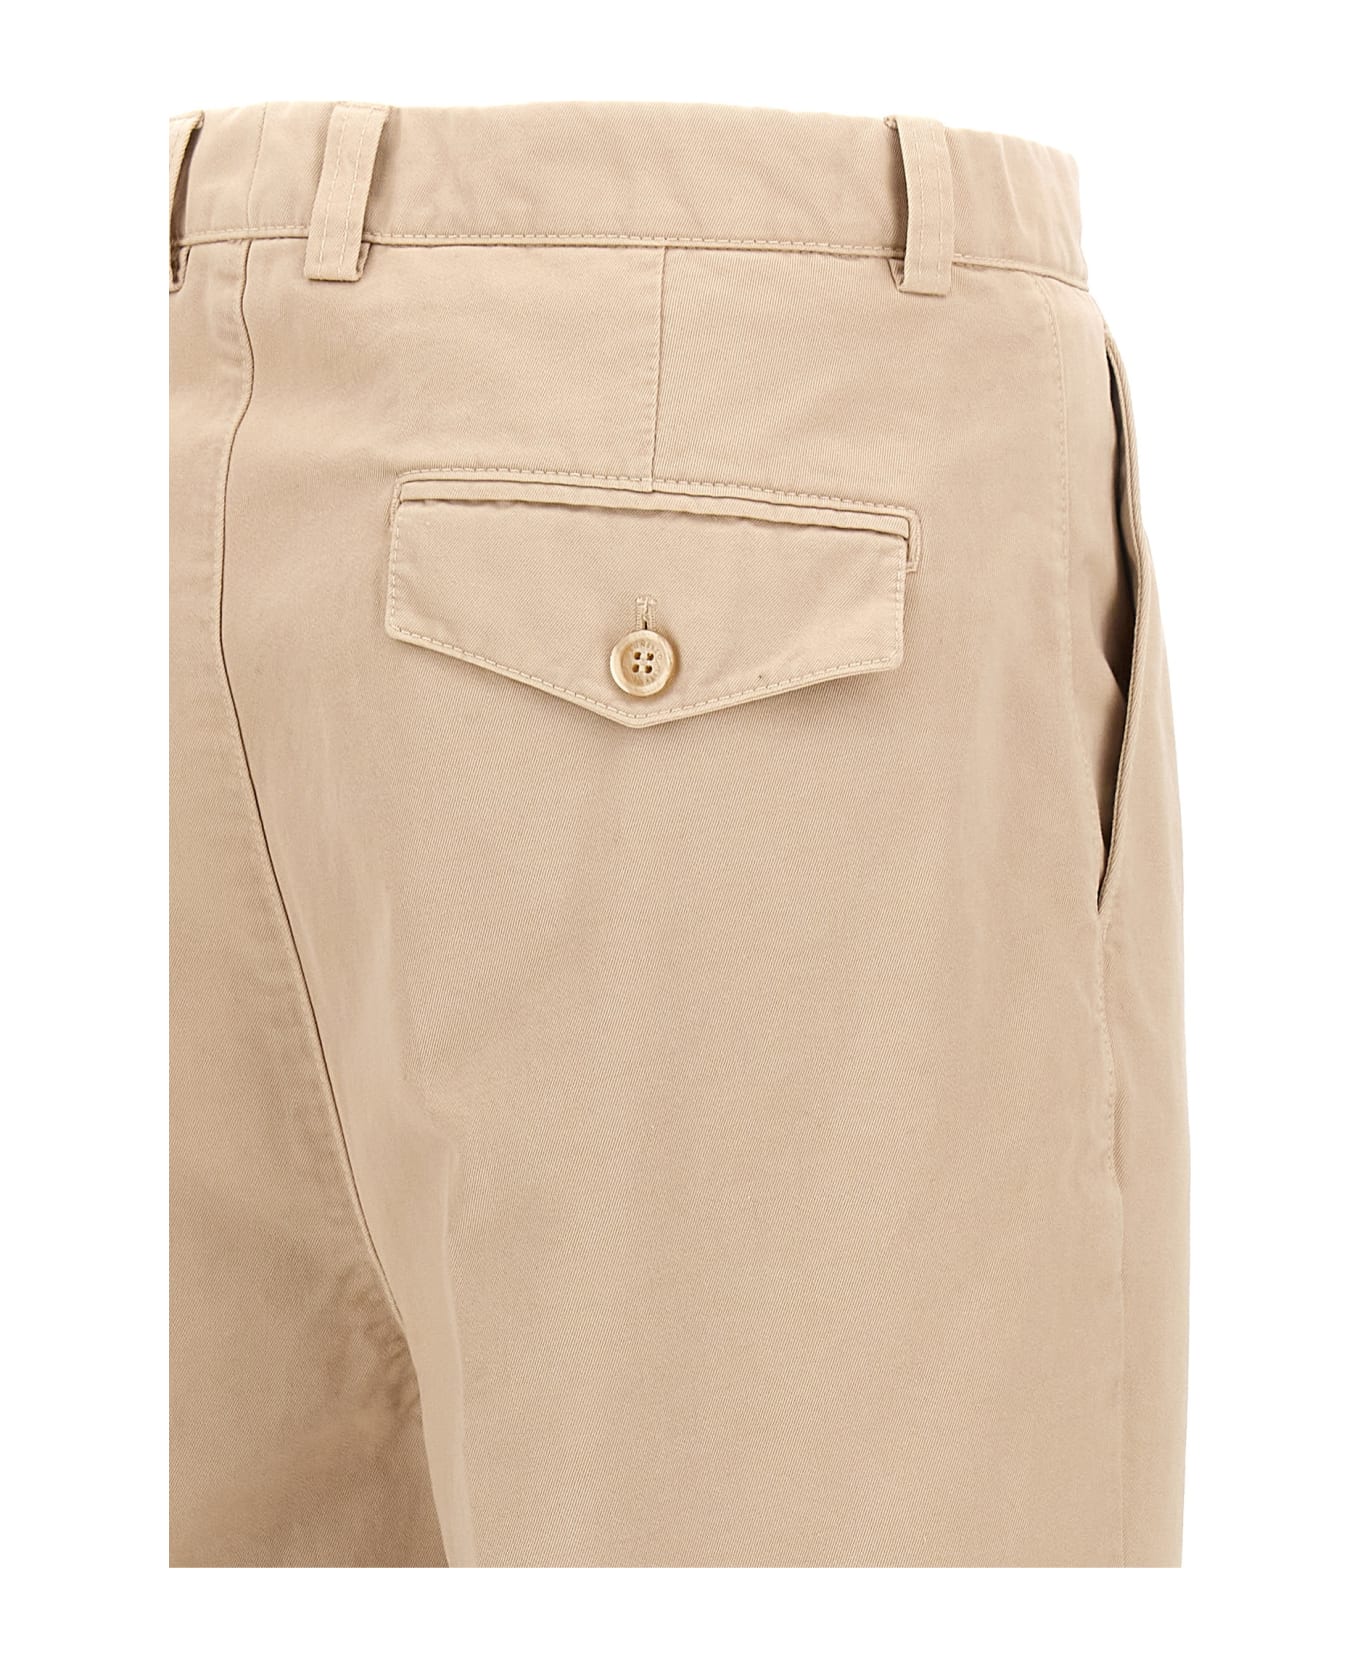 Brunello Cucinelli Cotton Pants With Front Pleats - Beige